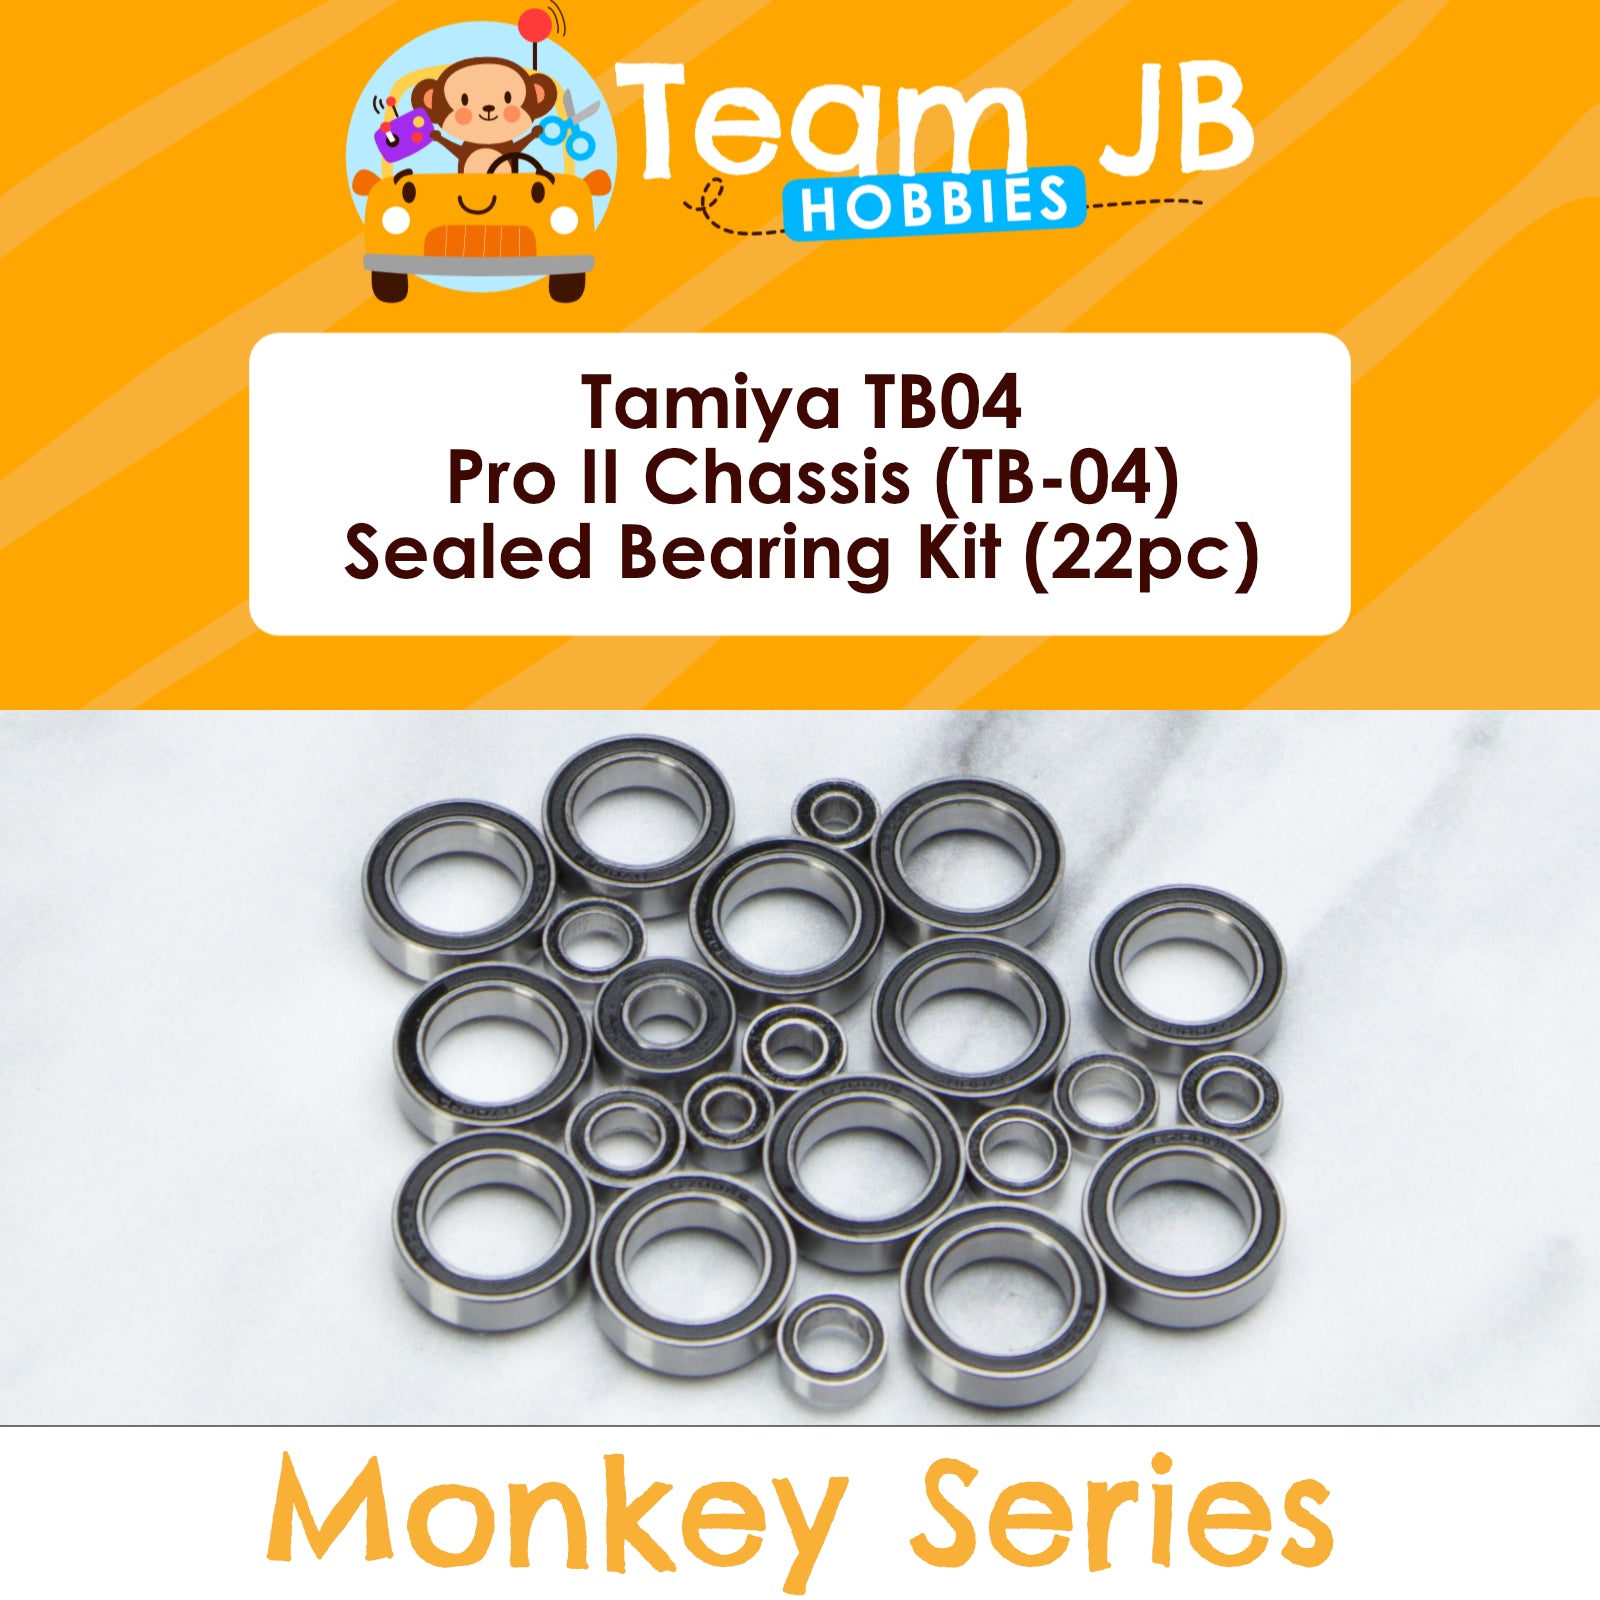 Tamiya TB04 Pro II Chassis - Sealed Bearing Kit